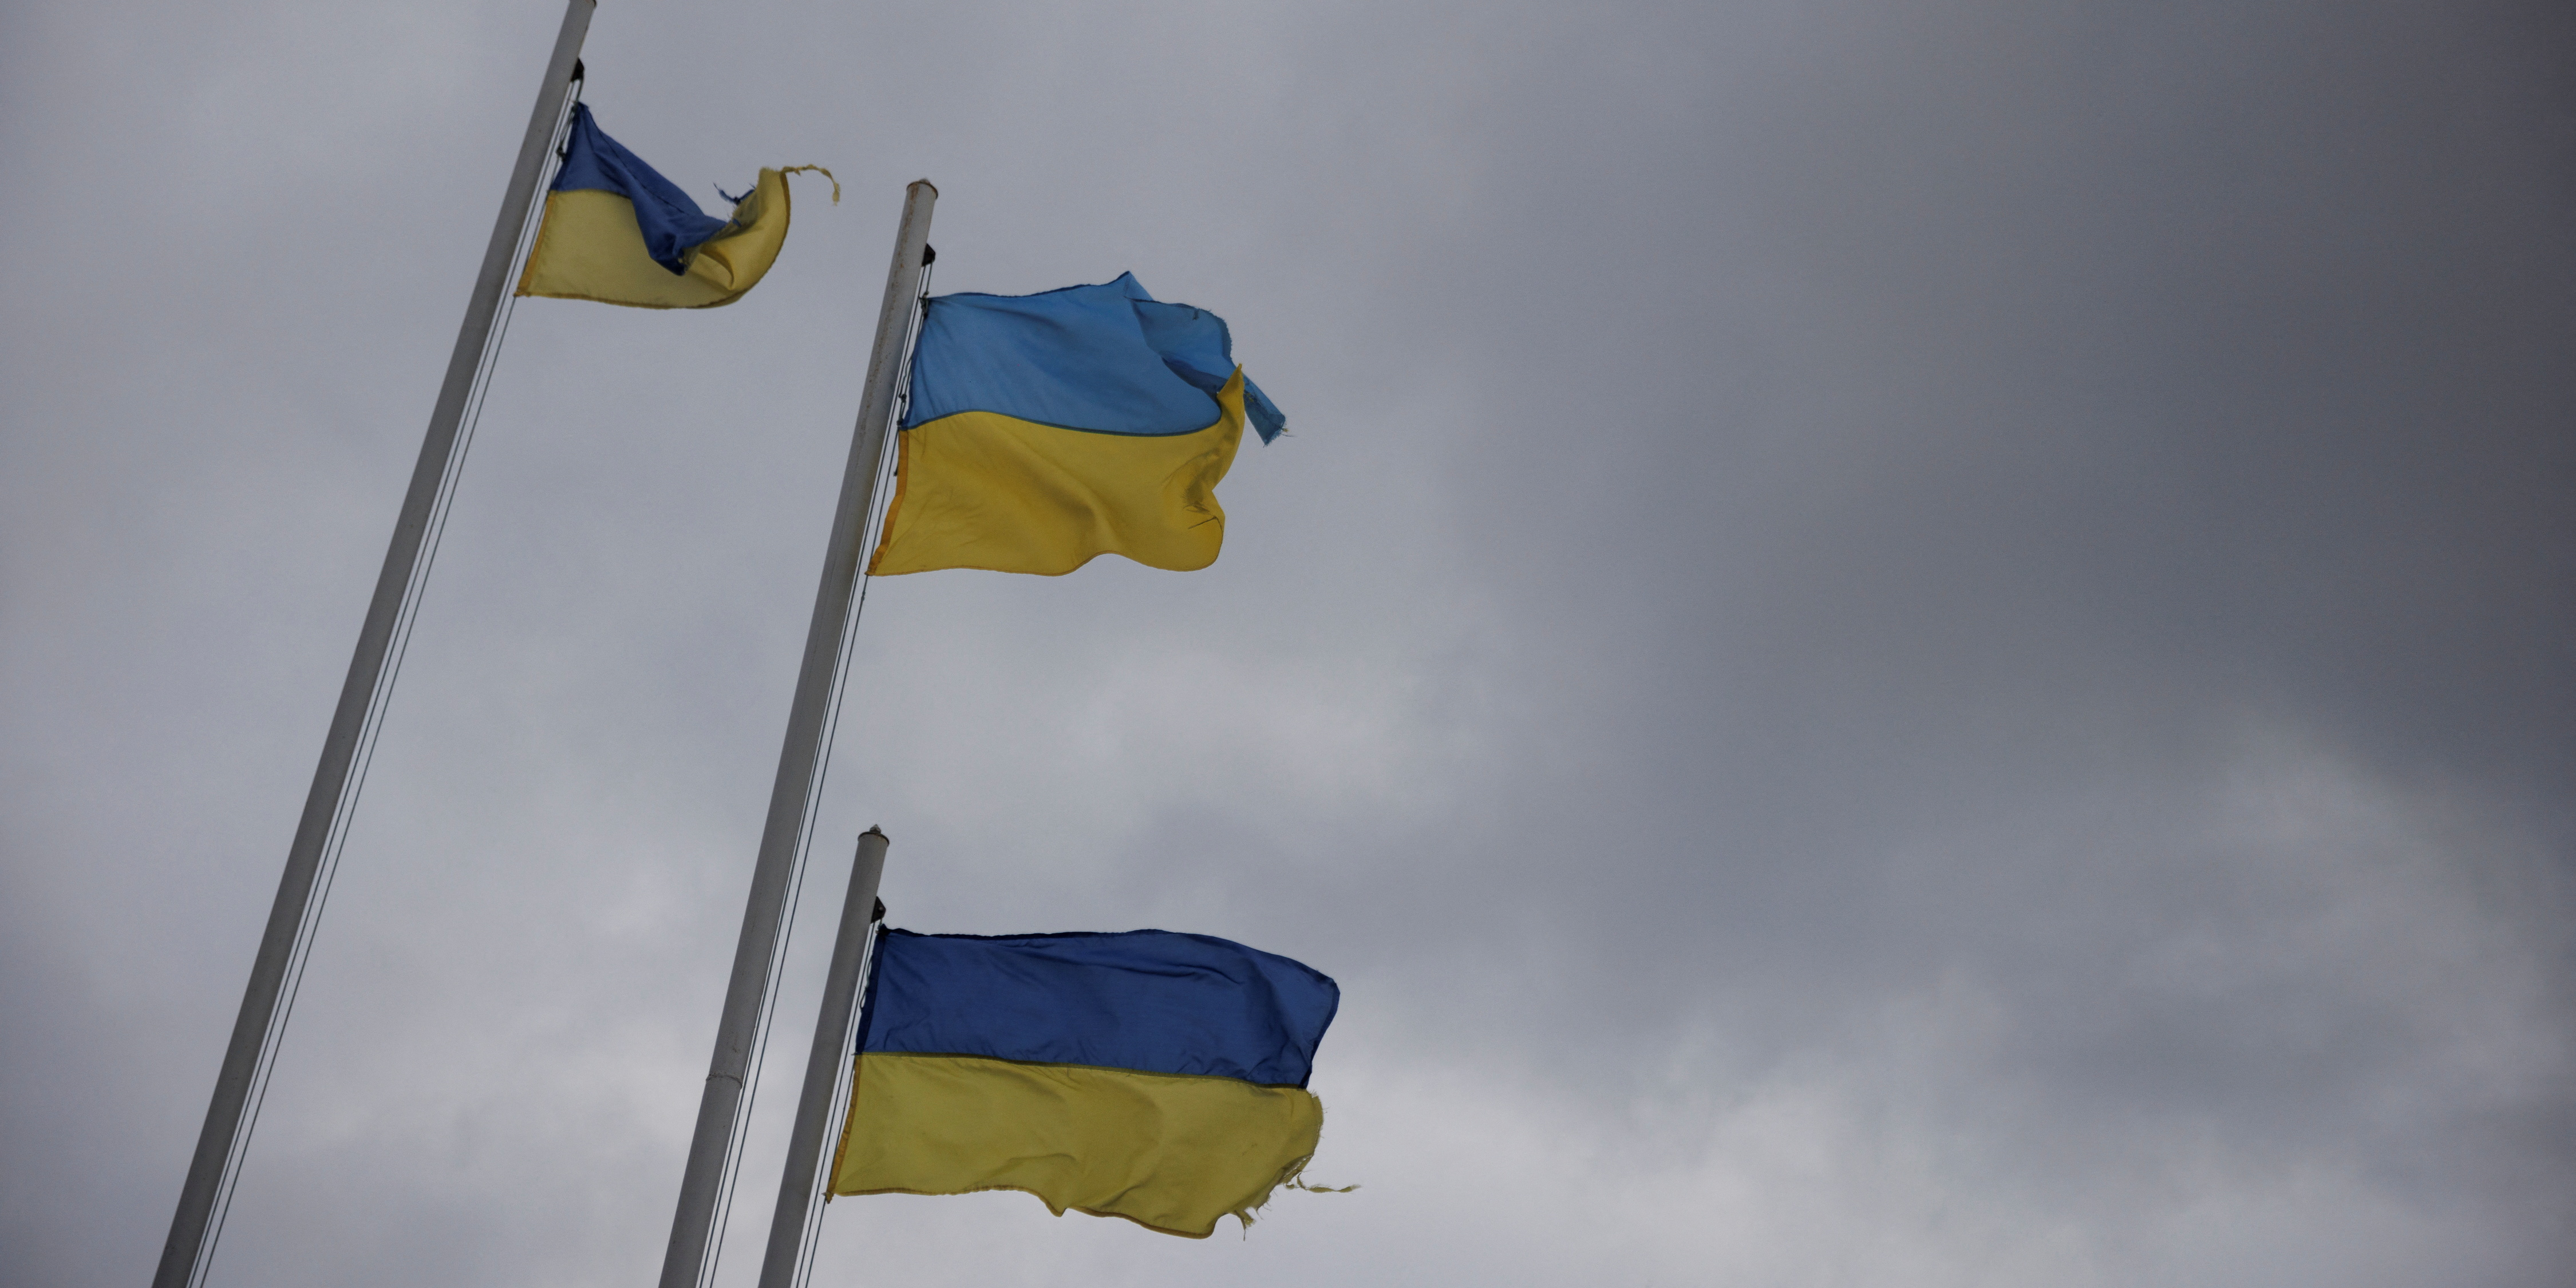 Inflation : la banque centrale ukrainienne relève son taux directeur de 10% à... 25%